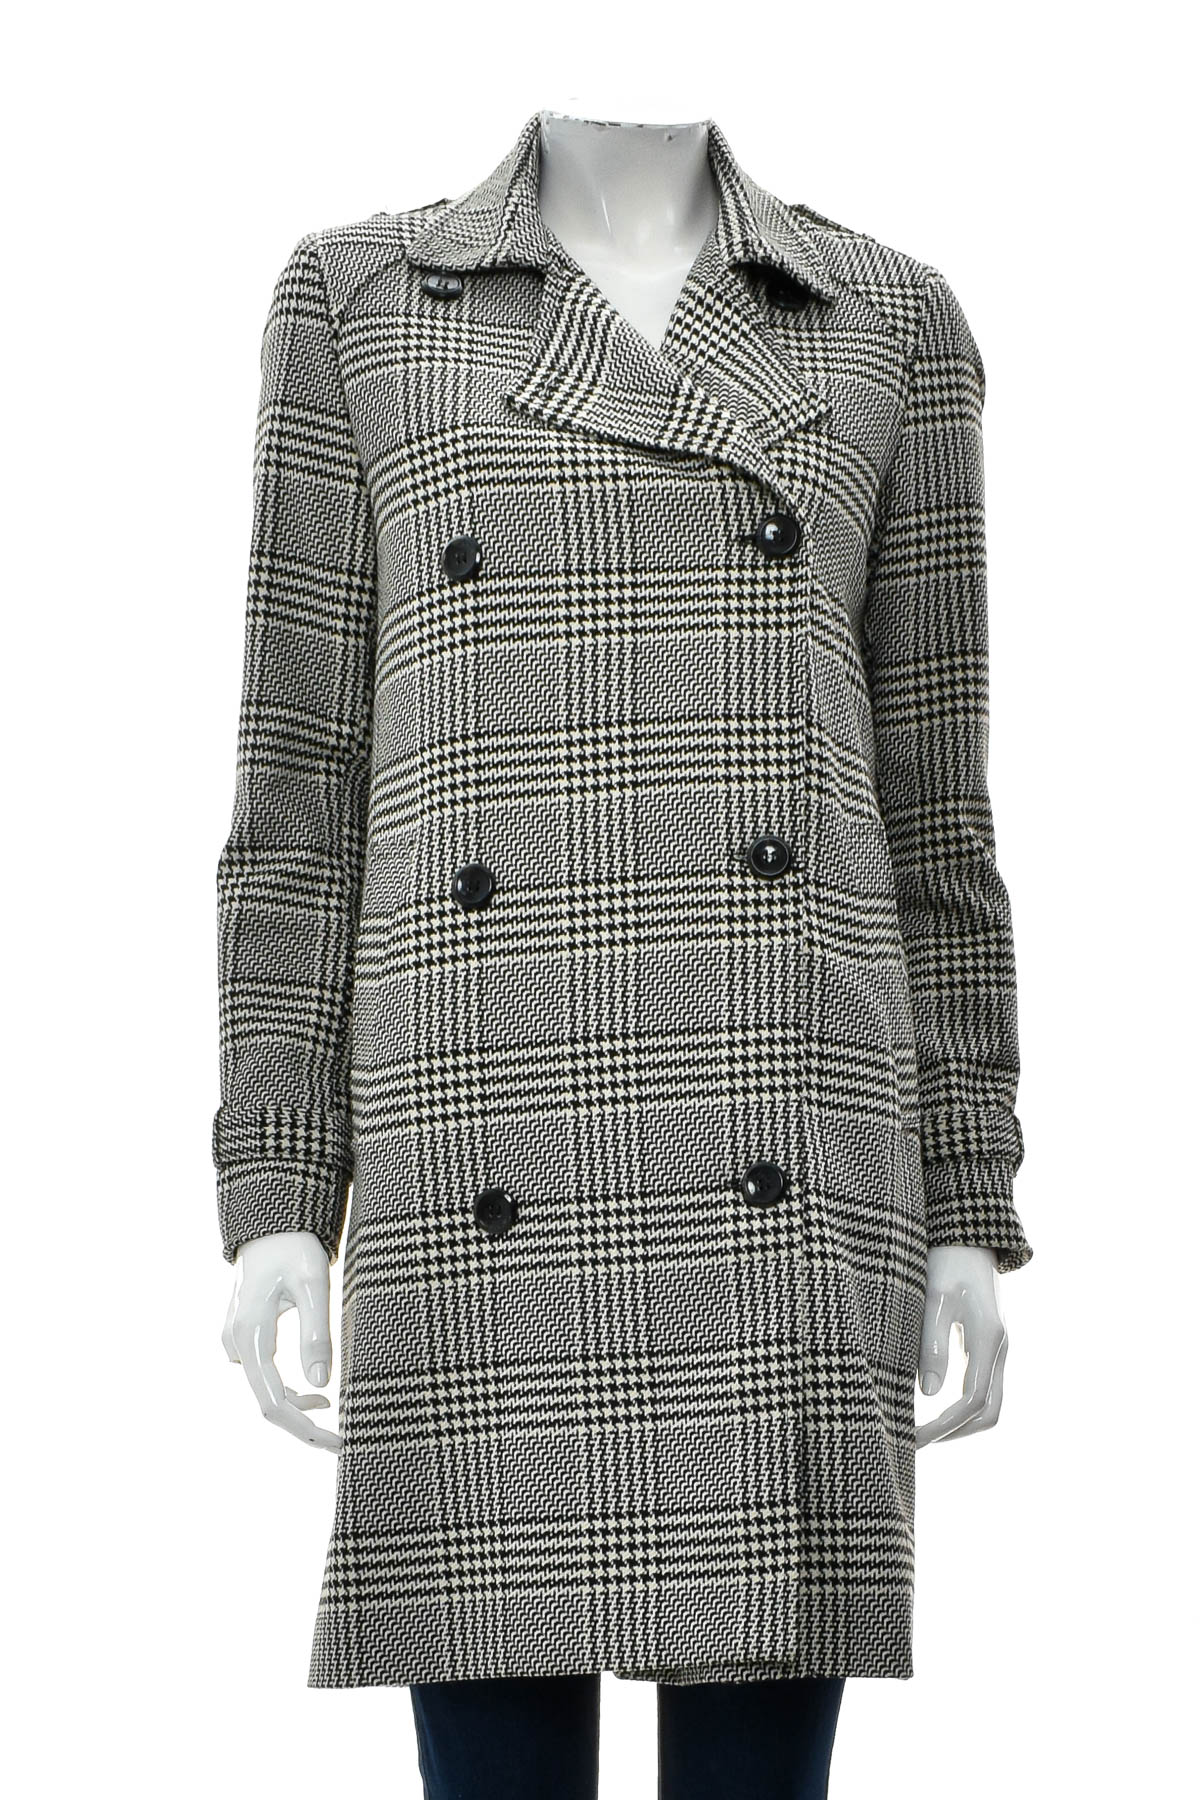 Women's coat - Bershka - 0